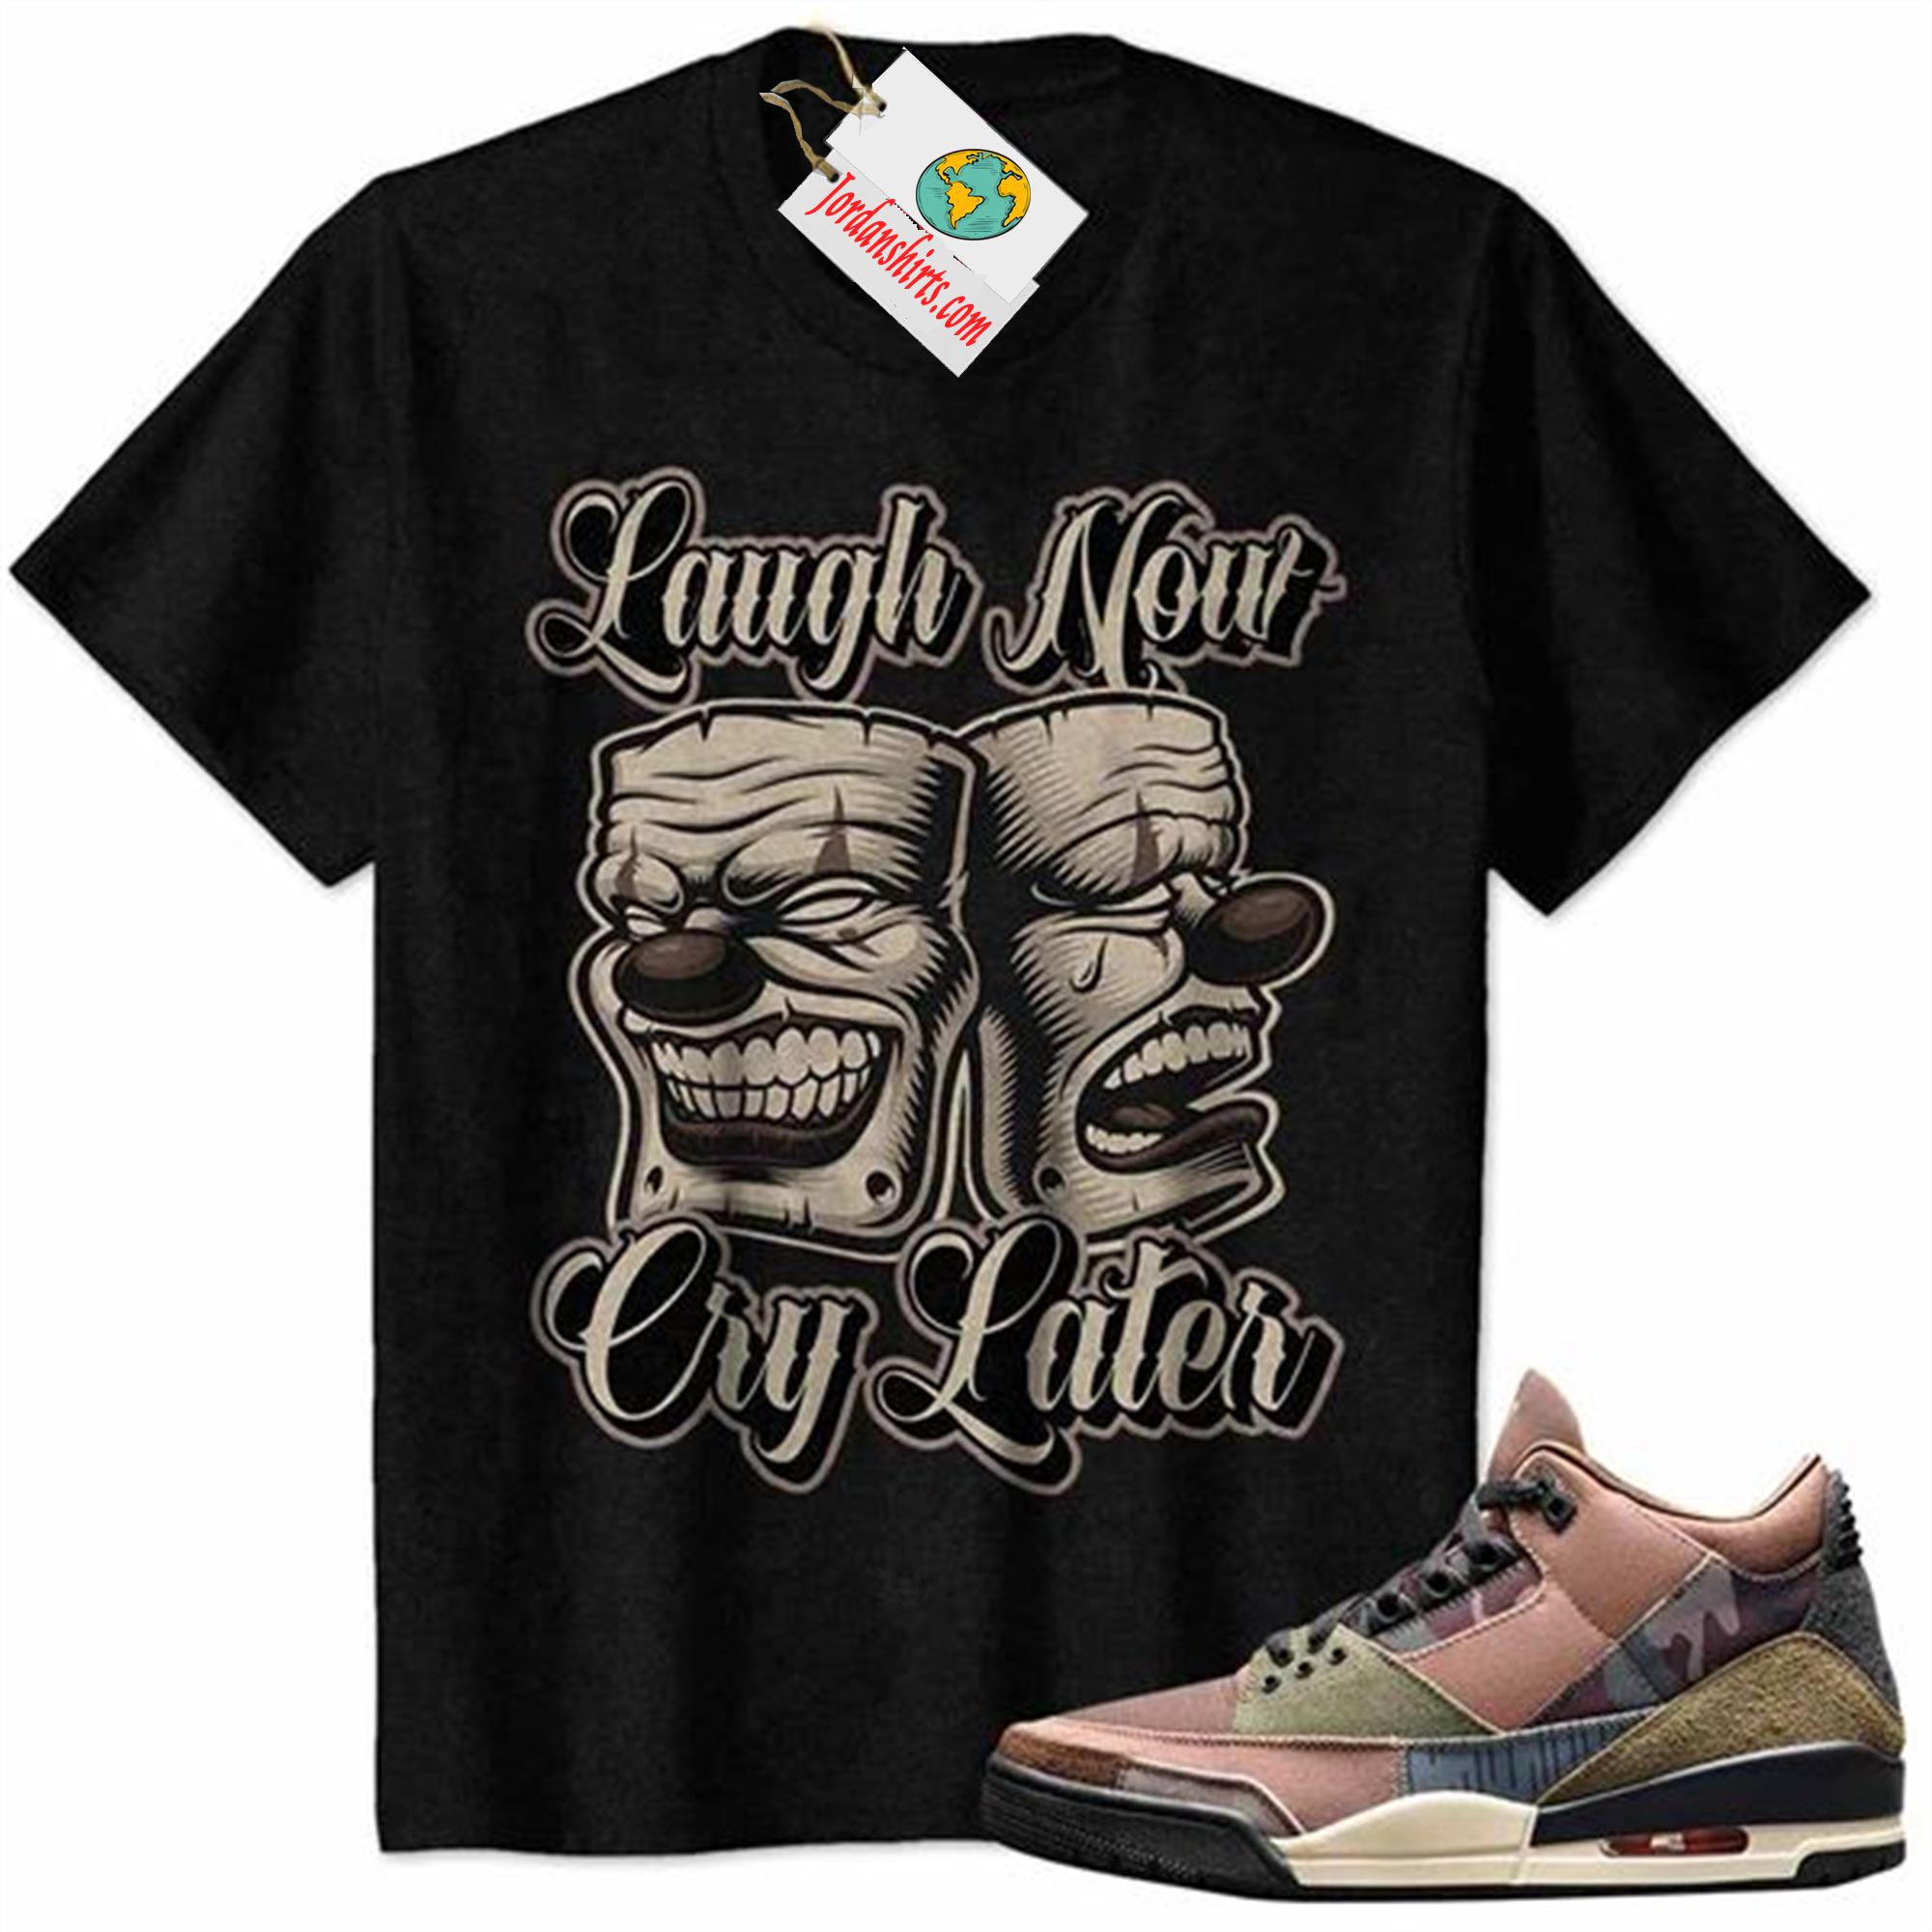 Jordan 3 Shirt, Laugh Now Cry Later Man Clown Mask Black Air Jordan 3 Camo 3s Full Size Up To 5xl